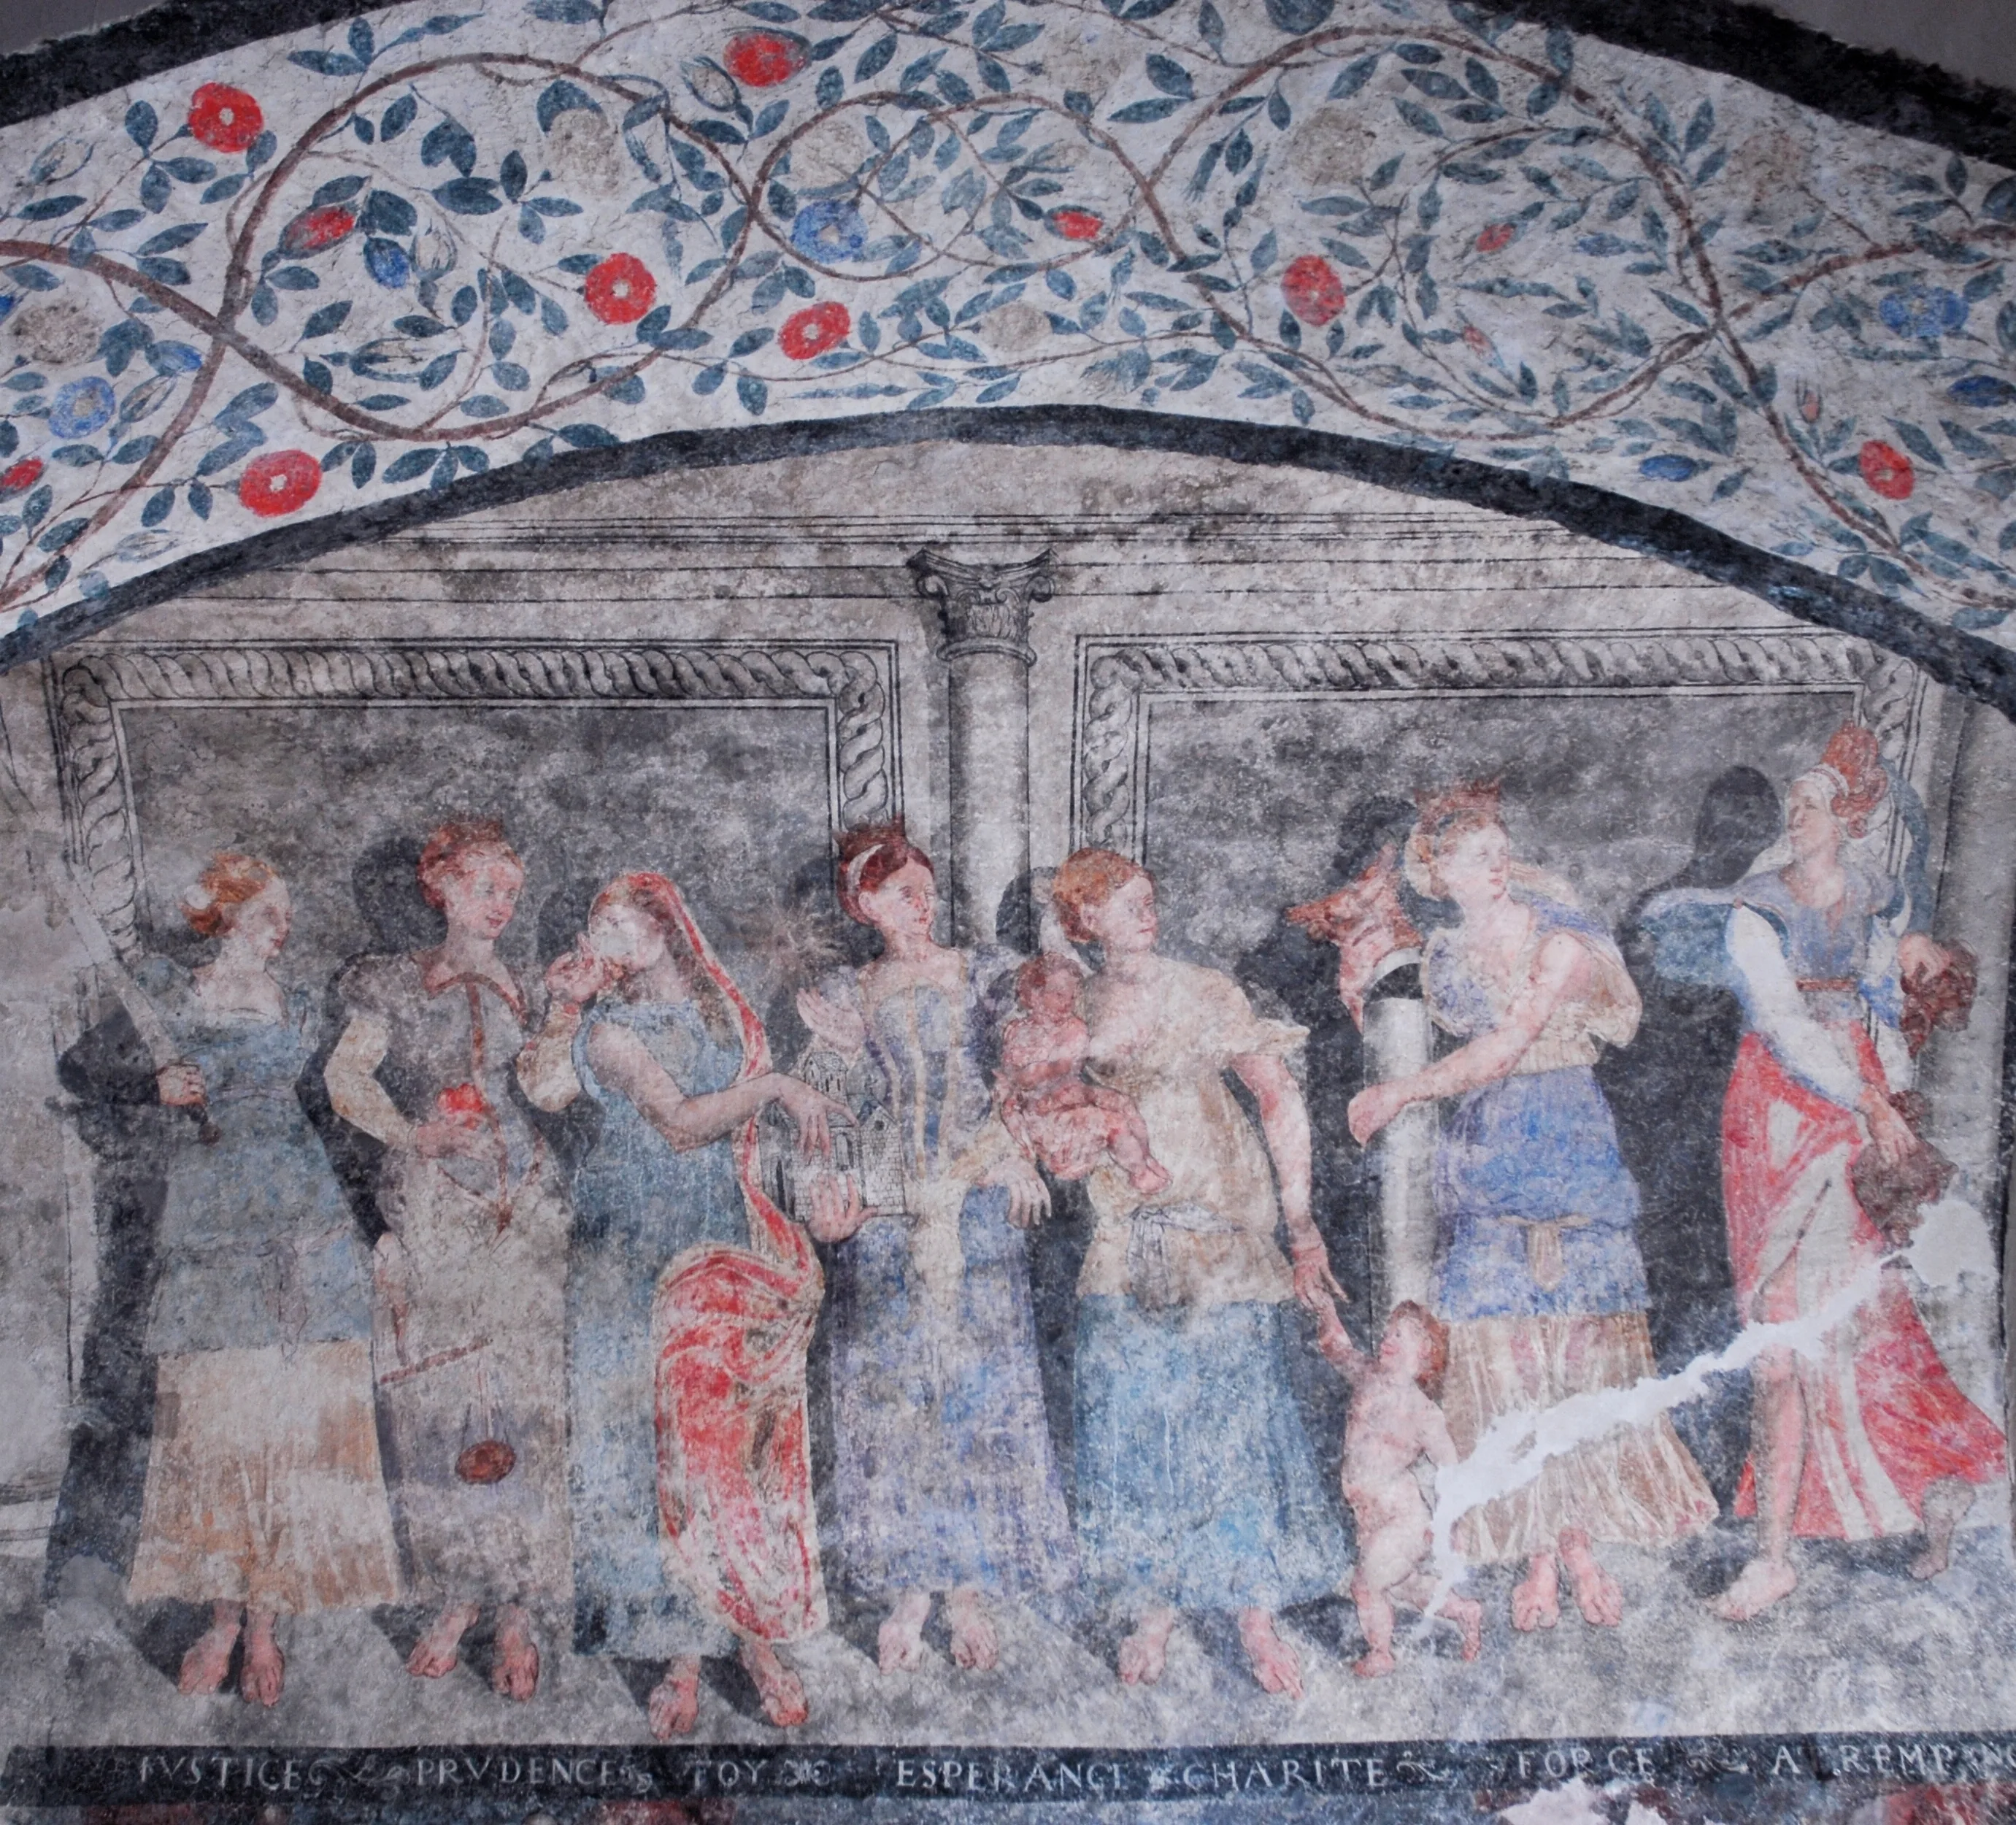 Pintura mural representant les virtuts a l'interior de l'església de Santa Eulària d'Unha. 